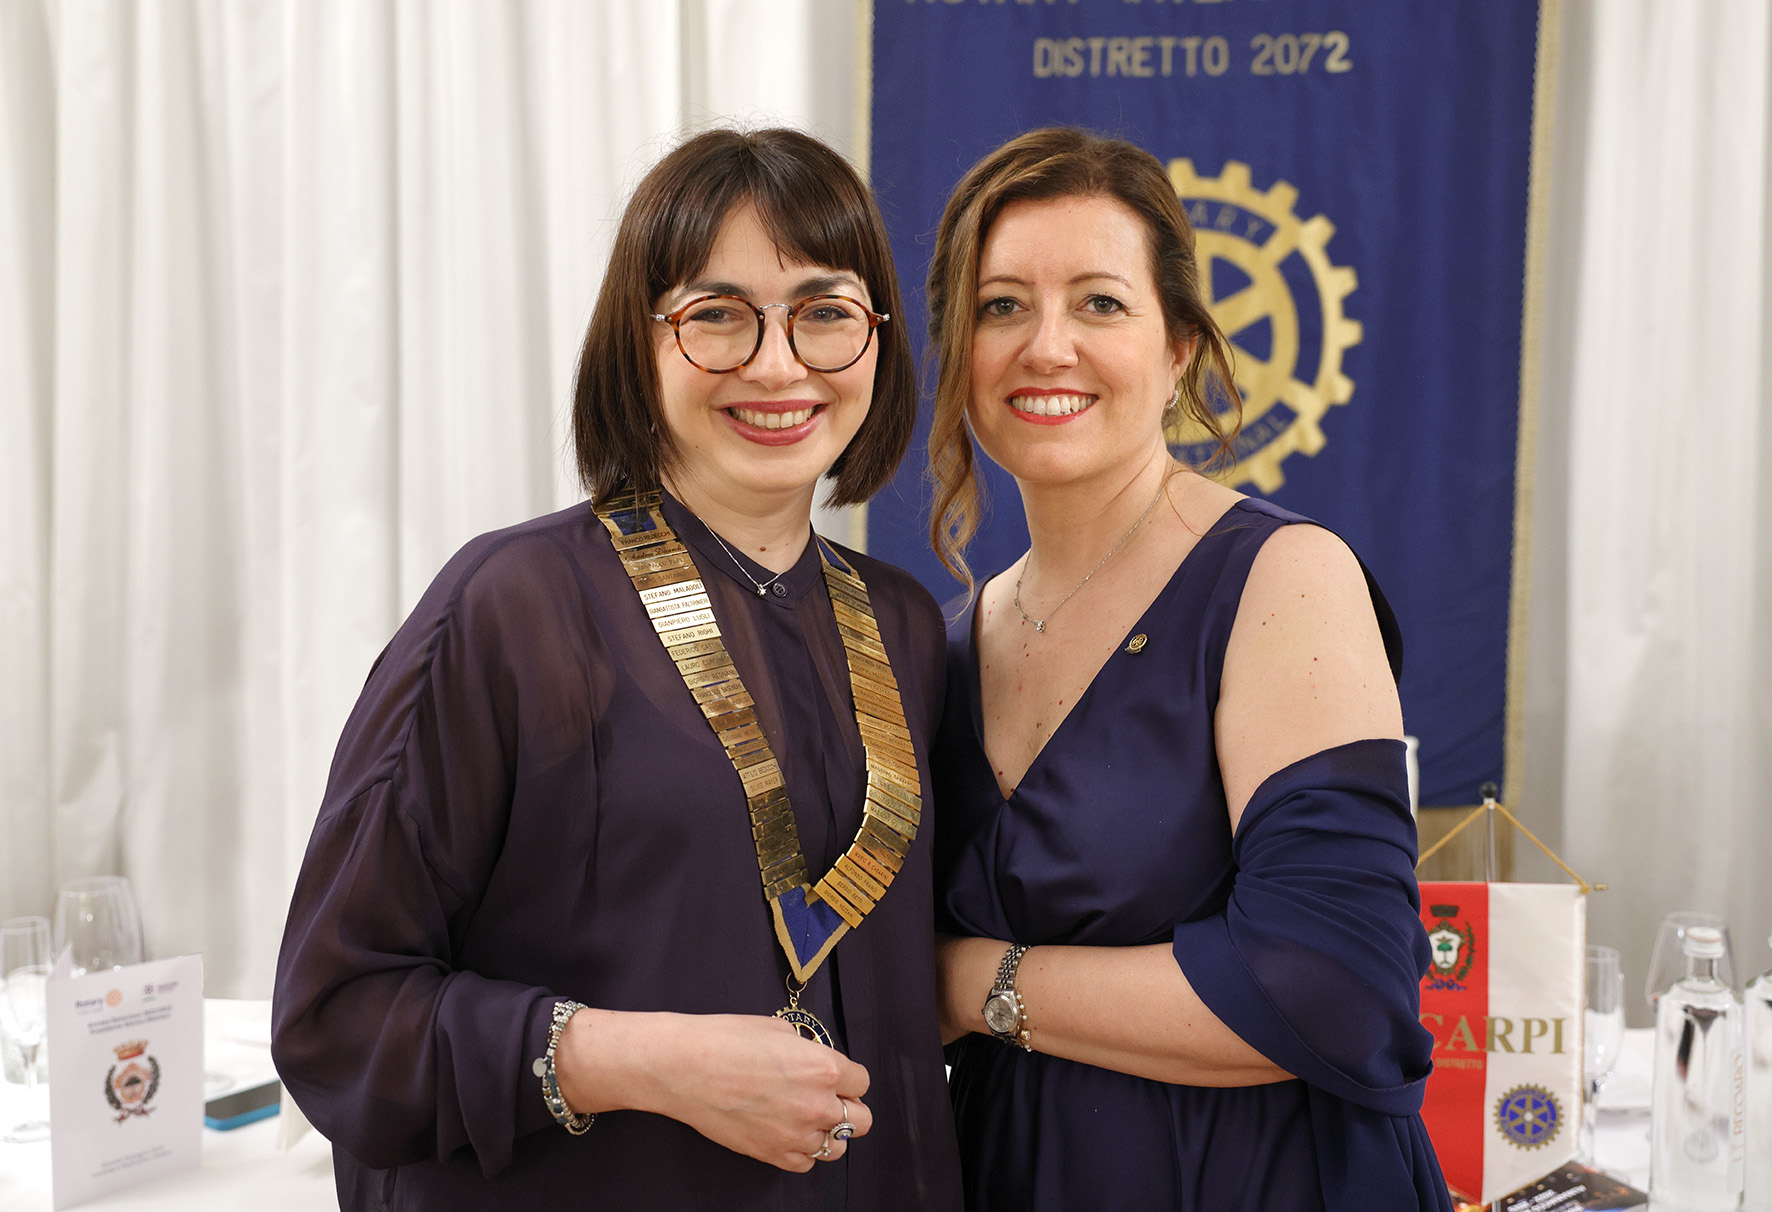 Barbara Zanaga è la nuova presidente del Rotary Club Carpi